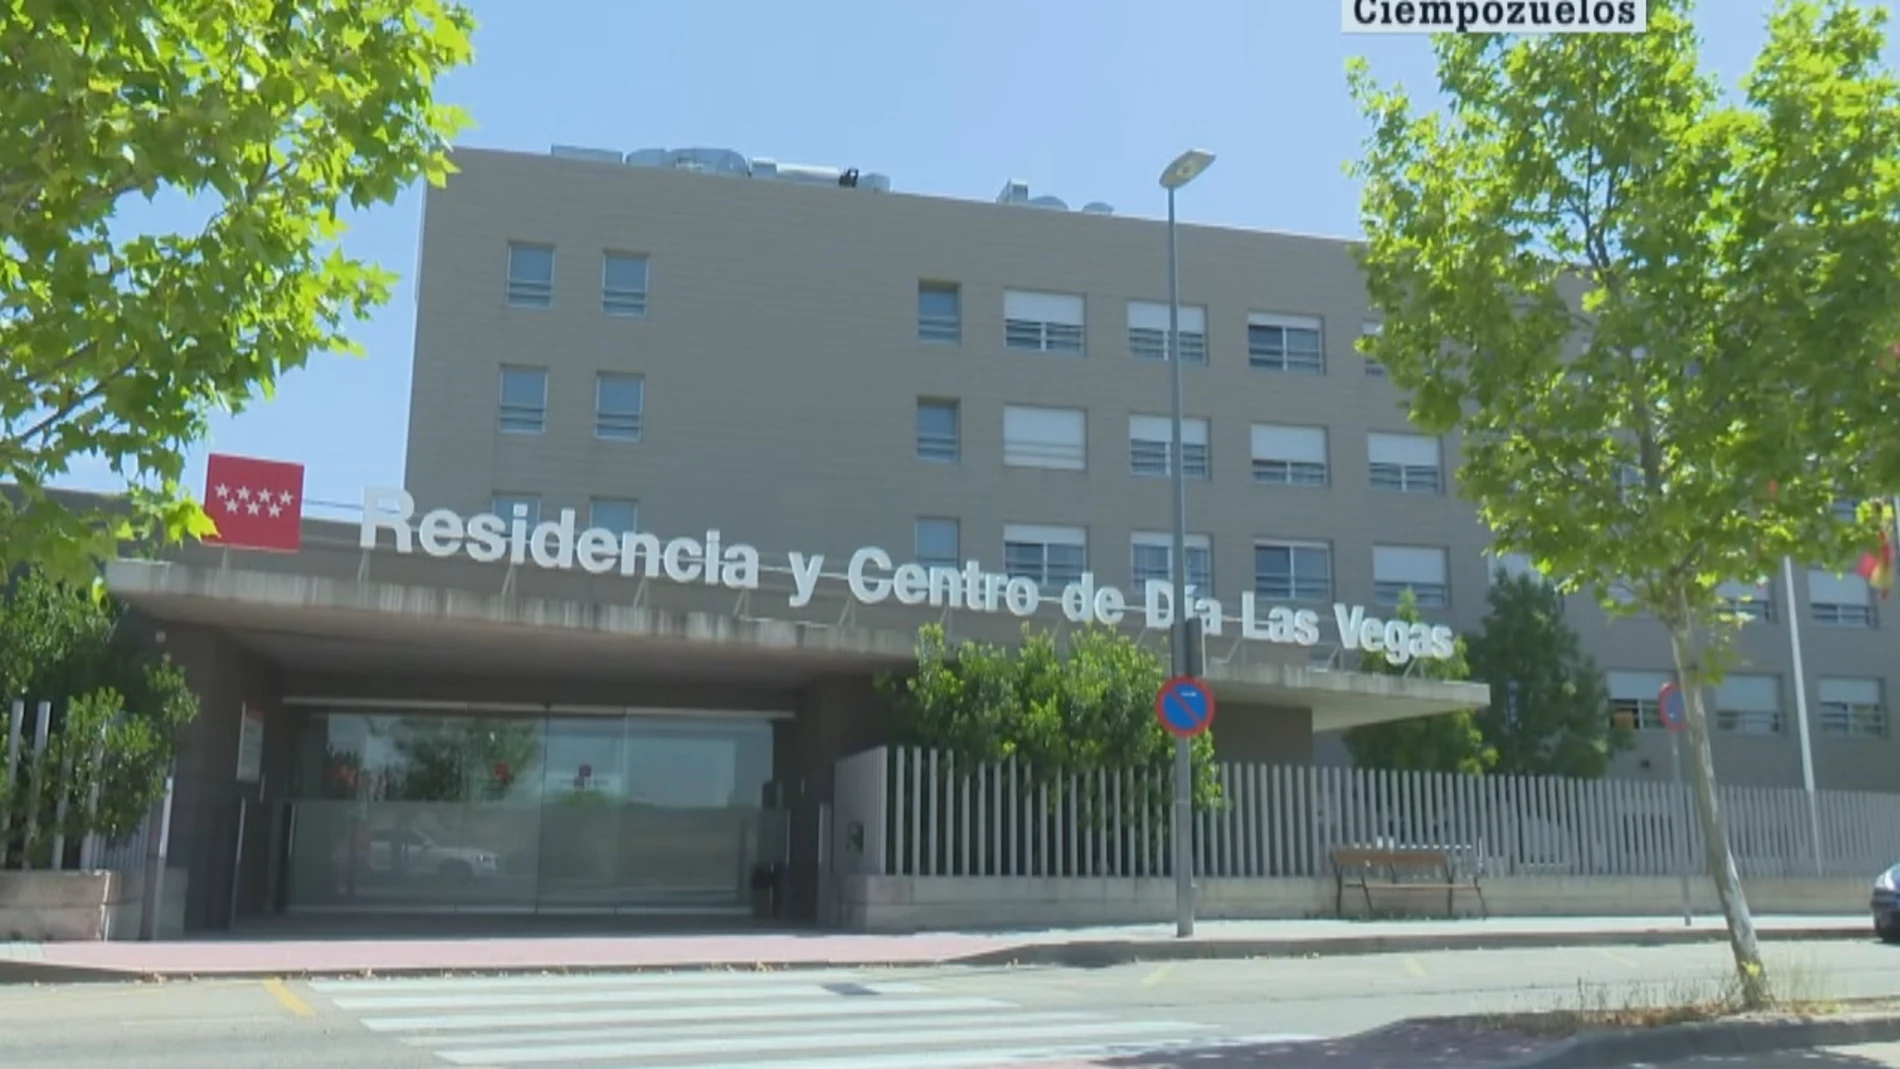 Preocupación en Ciempozuelos después de que cinco ancianos trasladados desde San Martín de la Vega den en coronavirus